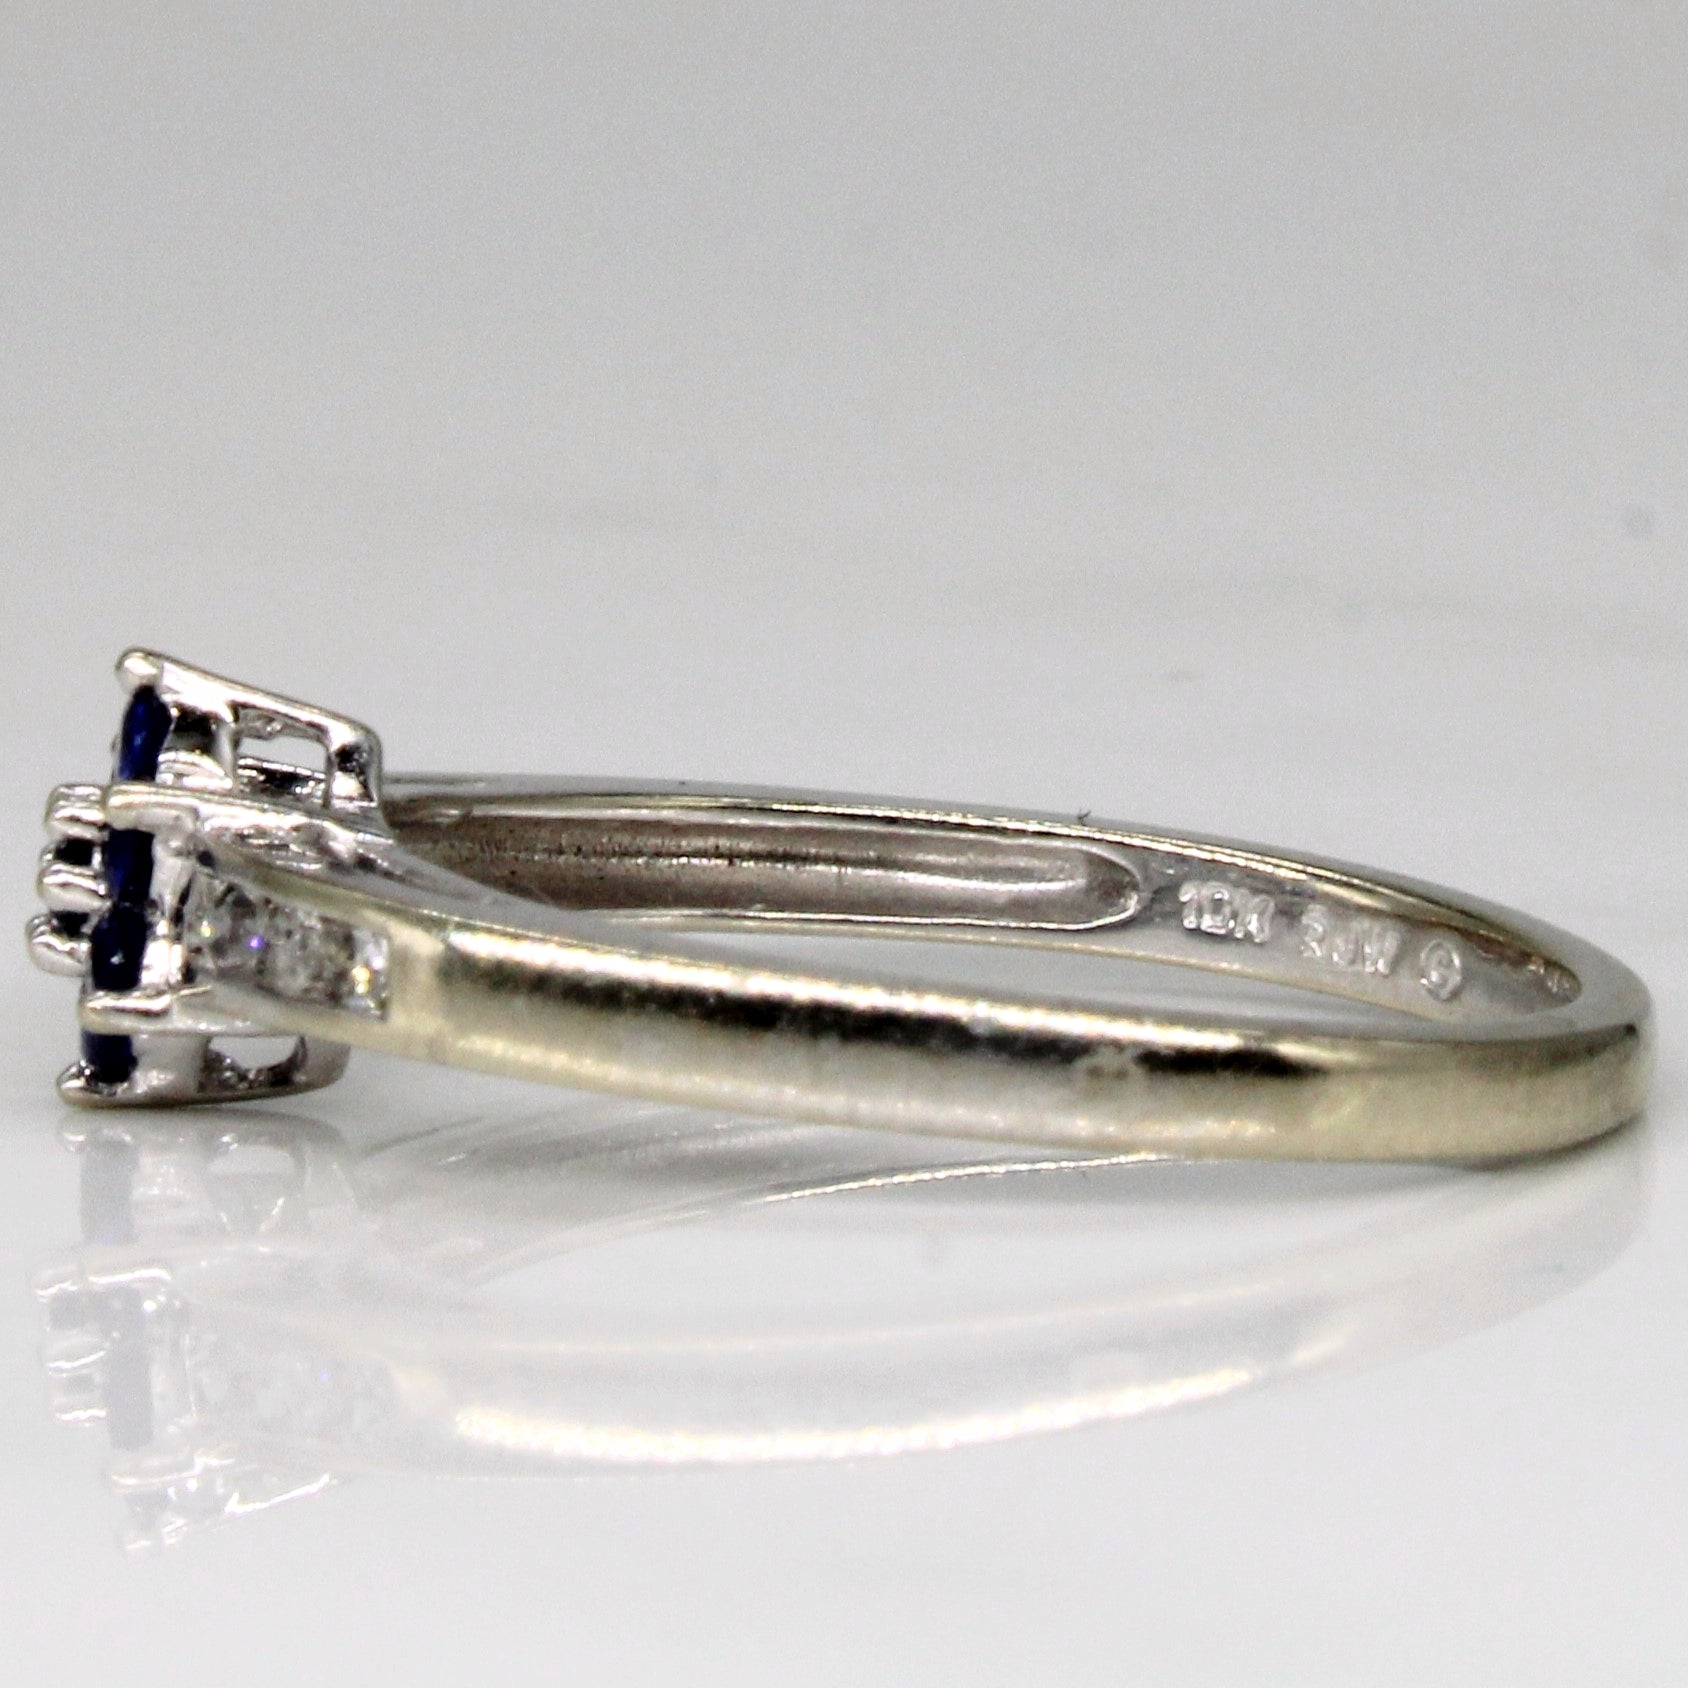 Sapphire & Diamond Ring | 0.14ctw, 0.06ctw | SZ 7 |